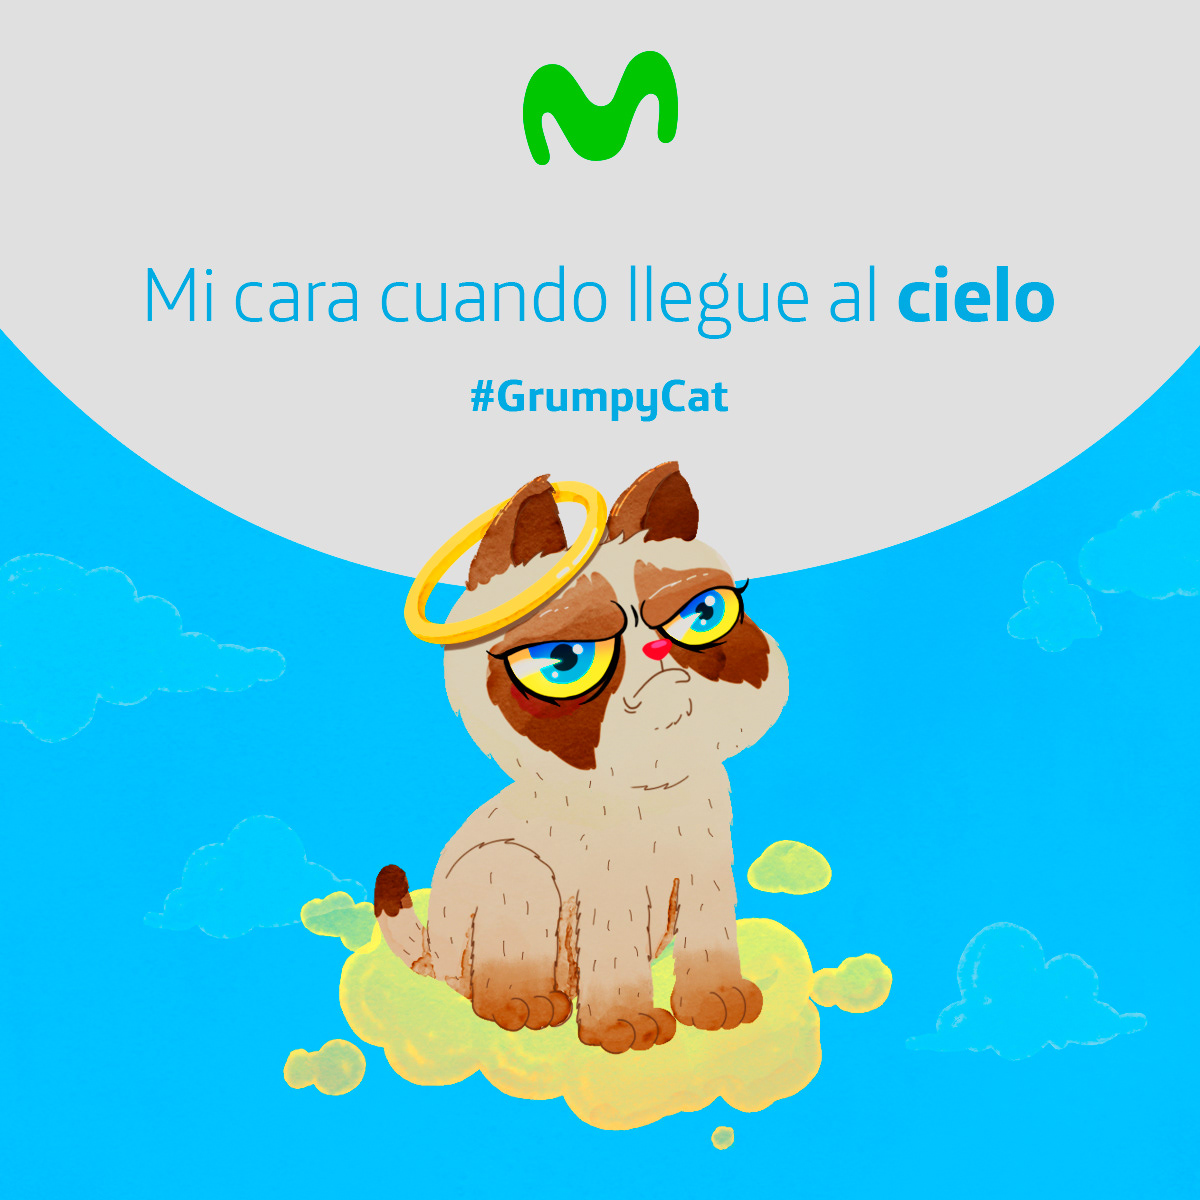 movistar Ecuador celulares digital facebook Desmuncubic redes sociales ilustracion animacion phone